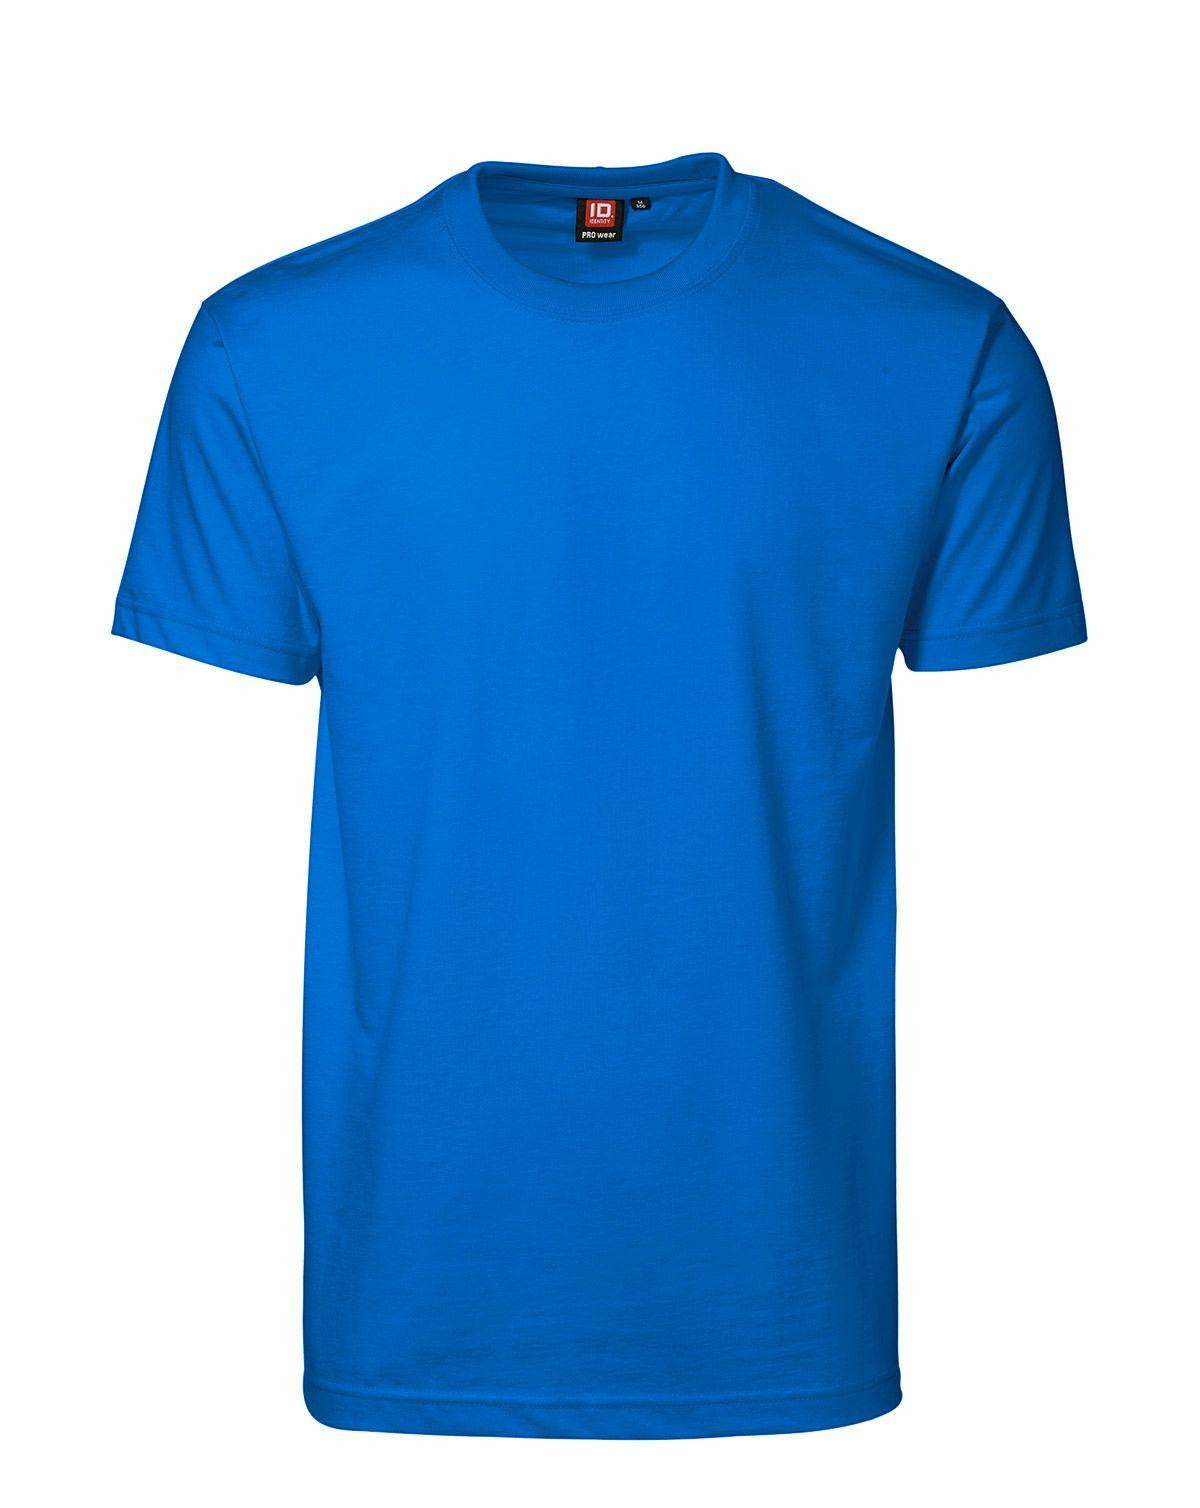 ID PRO Wear T-shirt til Herre (Azure, 4XL)